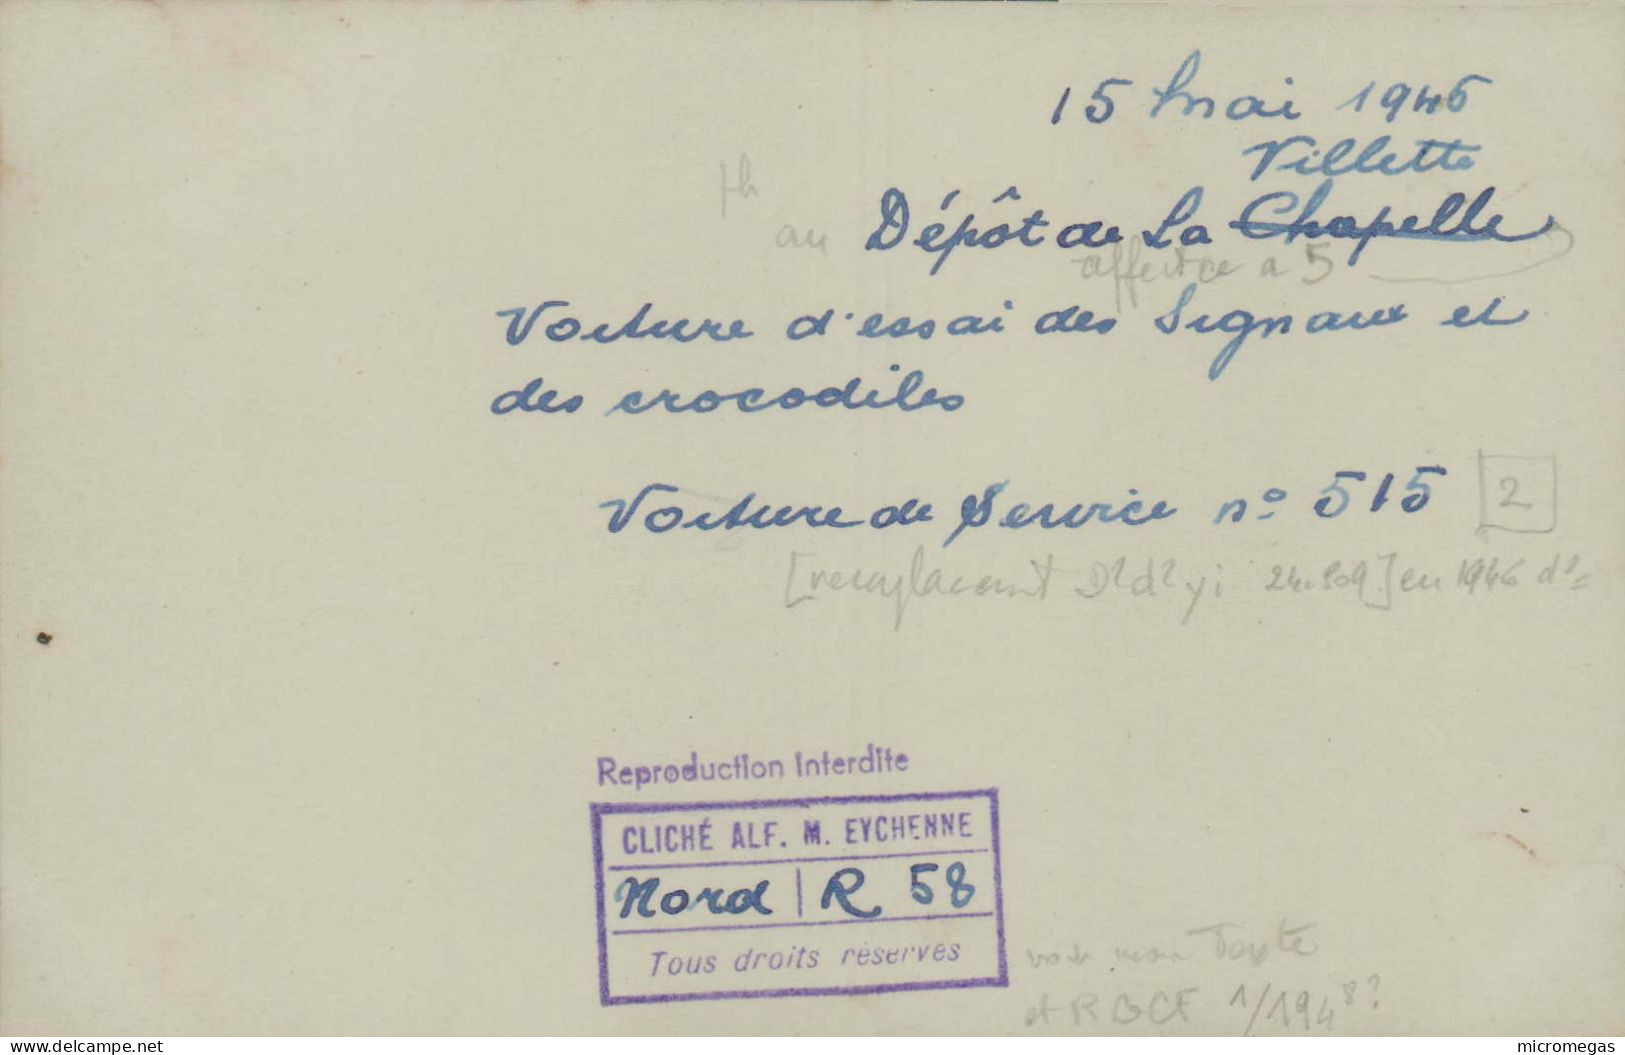 15 Mai 1946, Villette - Dépôt De La Chapelle - Voiture D'essai Des Signaux Et Des Crocodiles  - Cliché Alf. M. Eychenne - Eisenbahnen